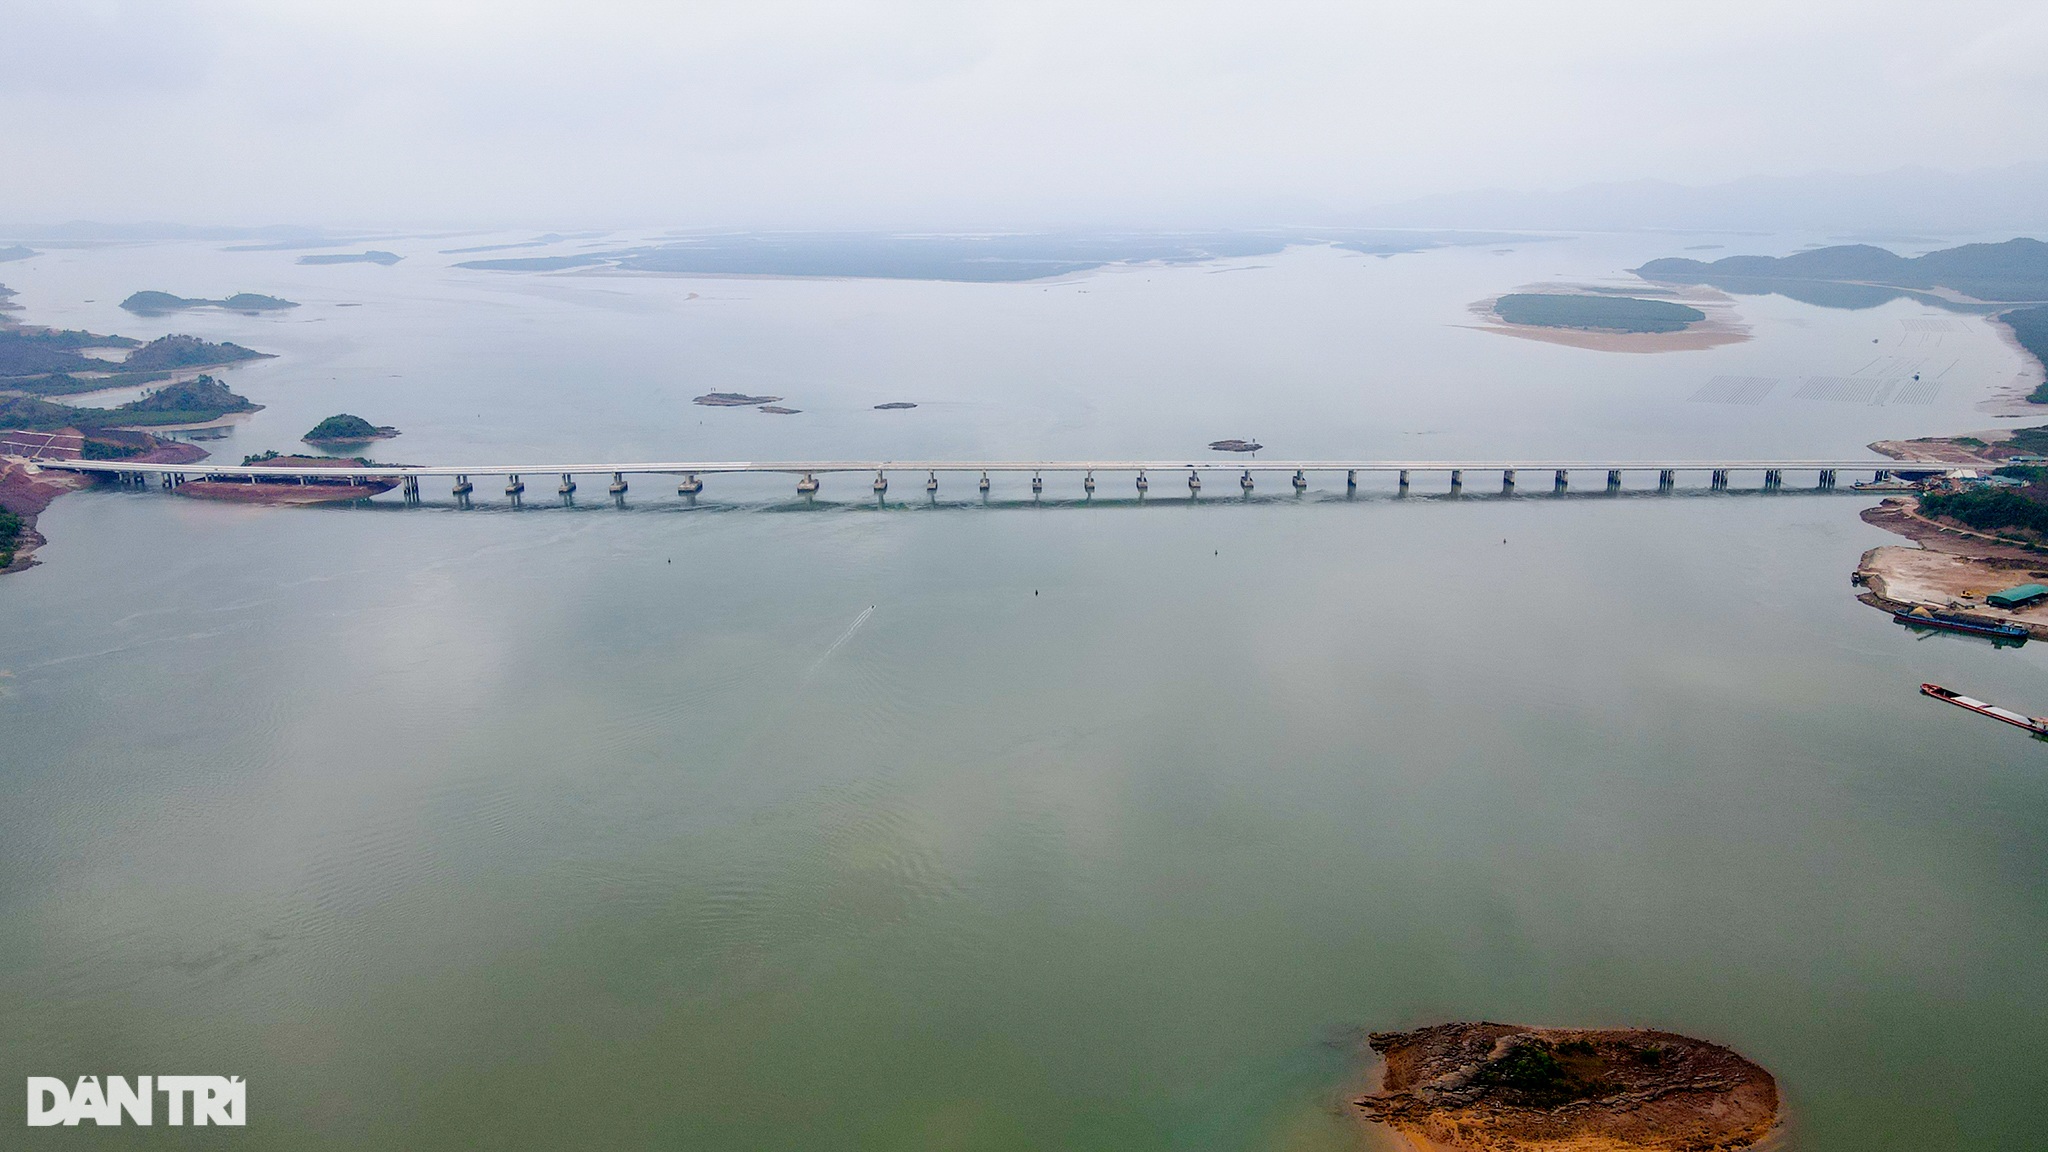 Chiêm ngưỡng cầu vượt biển 800 tỷ đồng dài nhất tỉnh Quảng Ninh - 1